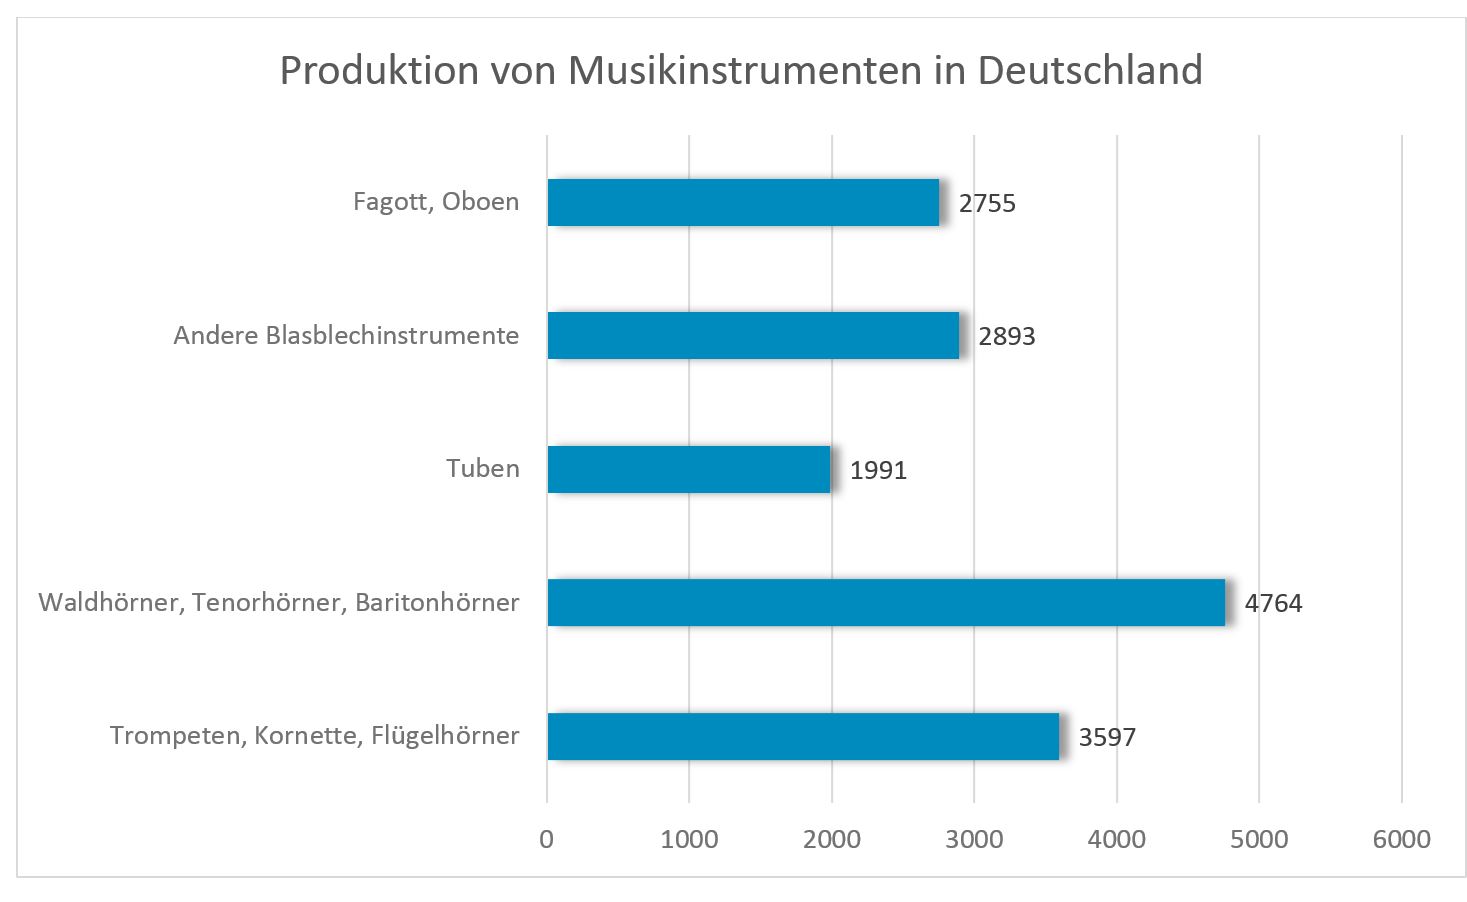 Produktion von musikinstrumenten in Deutschland Quelle: http://www.miz.org/